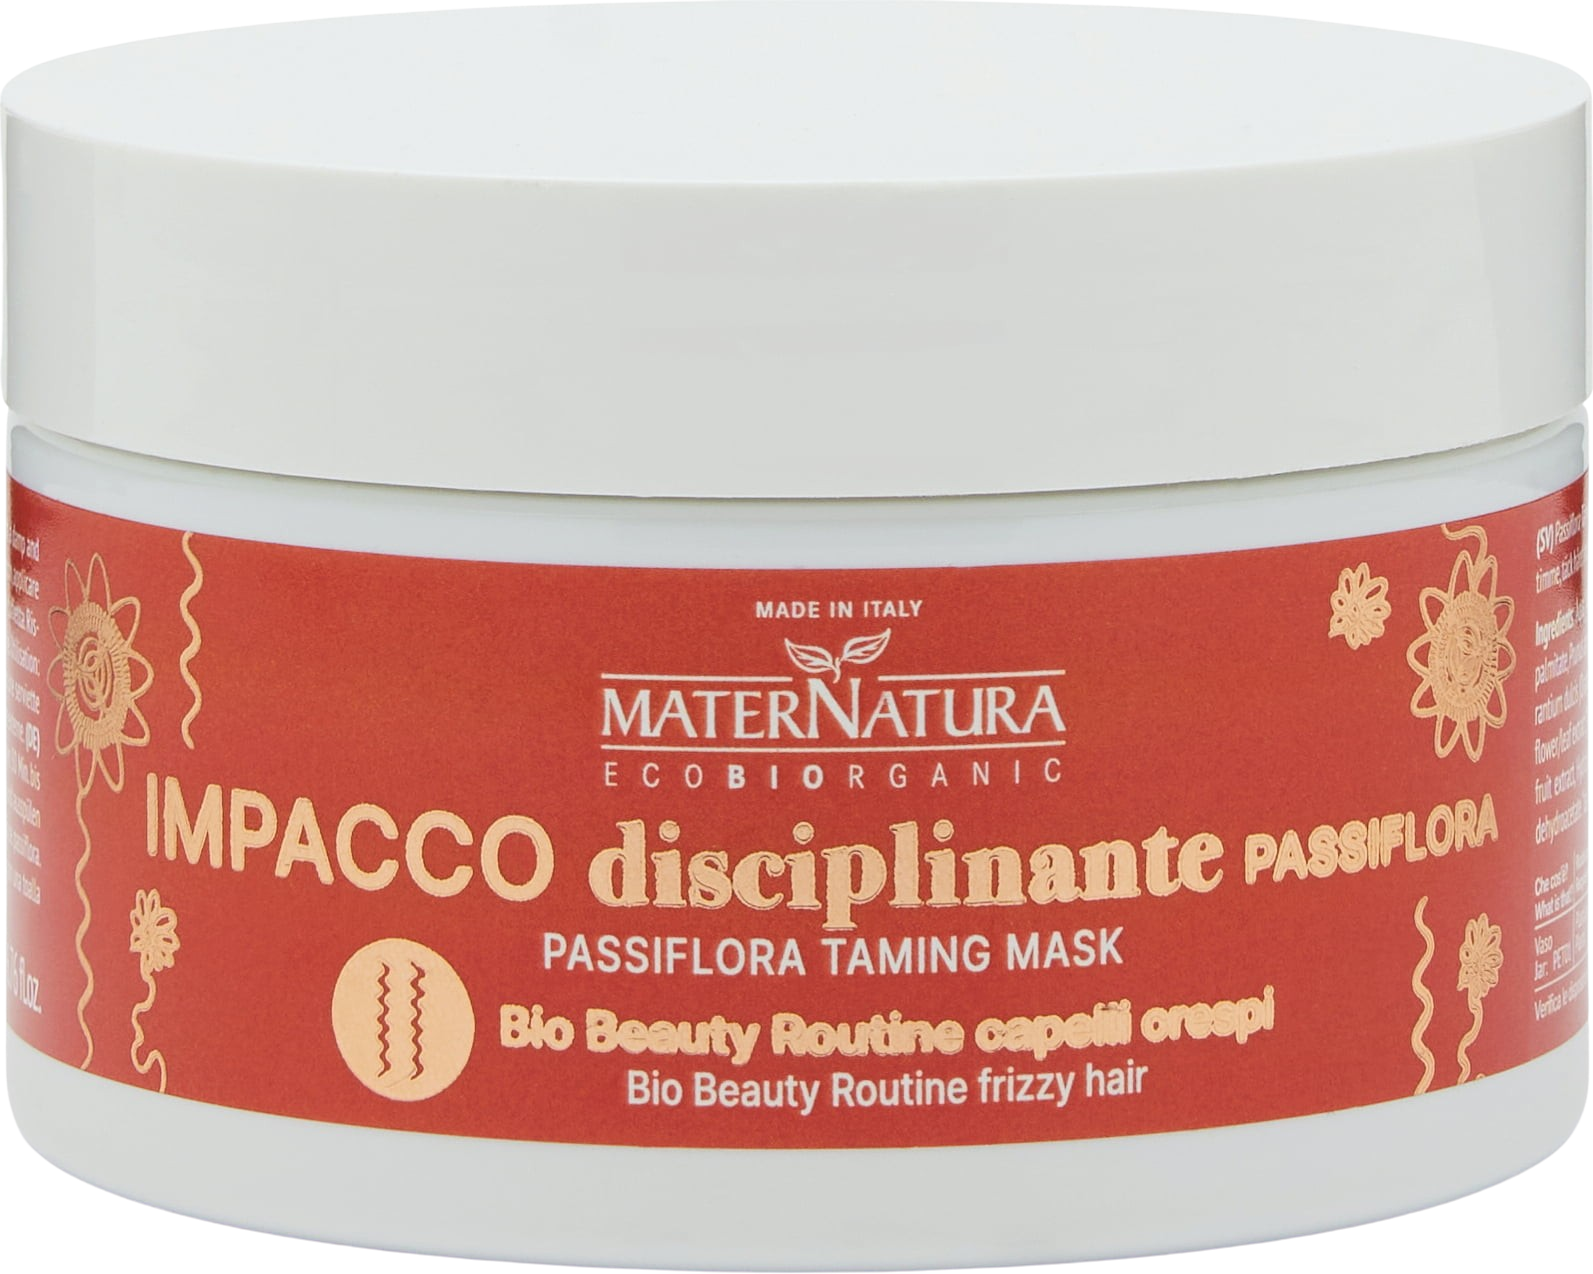 Impacco Disciplinante Capelli Crespi alla Passiflora - 200 ml